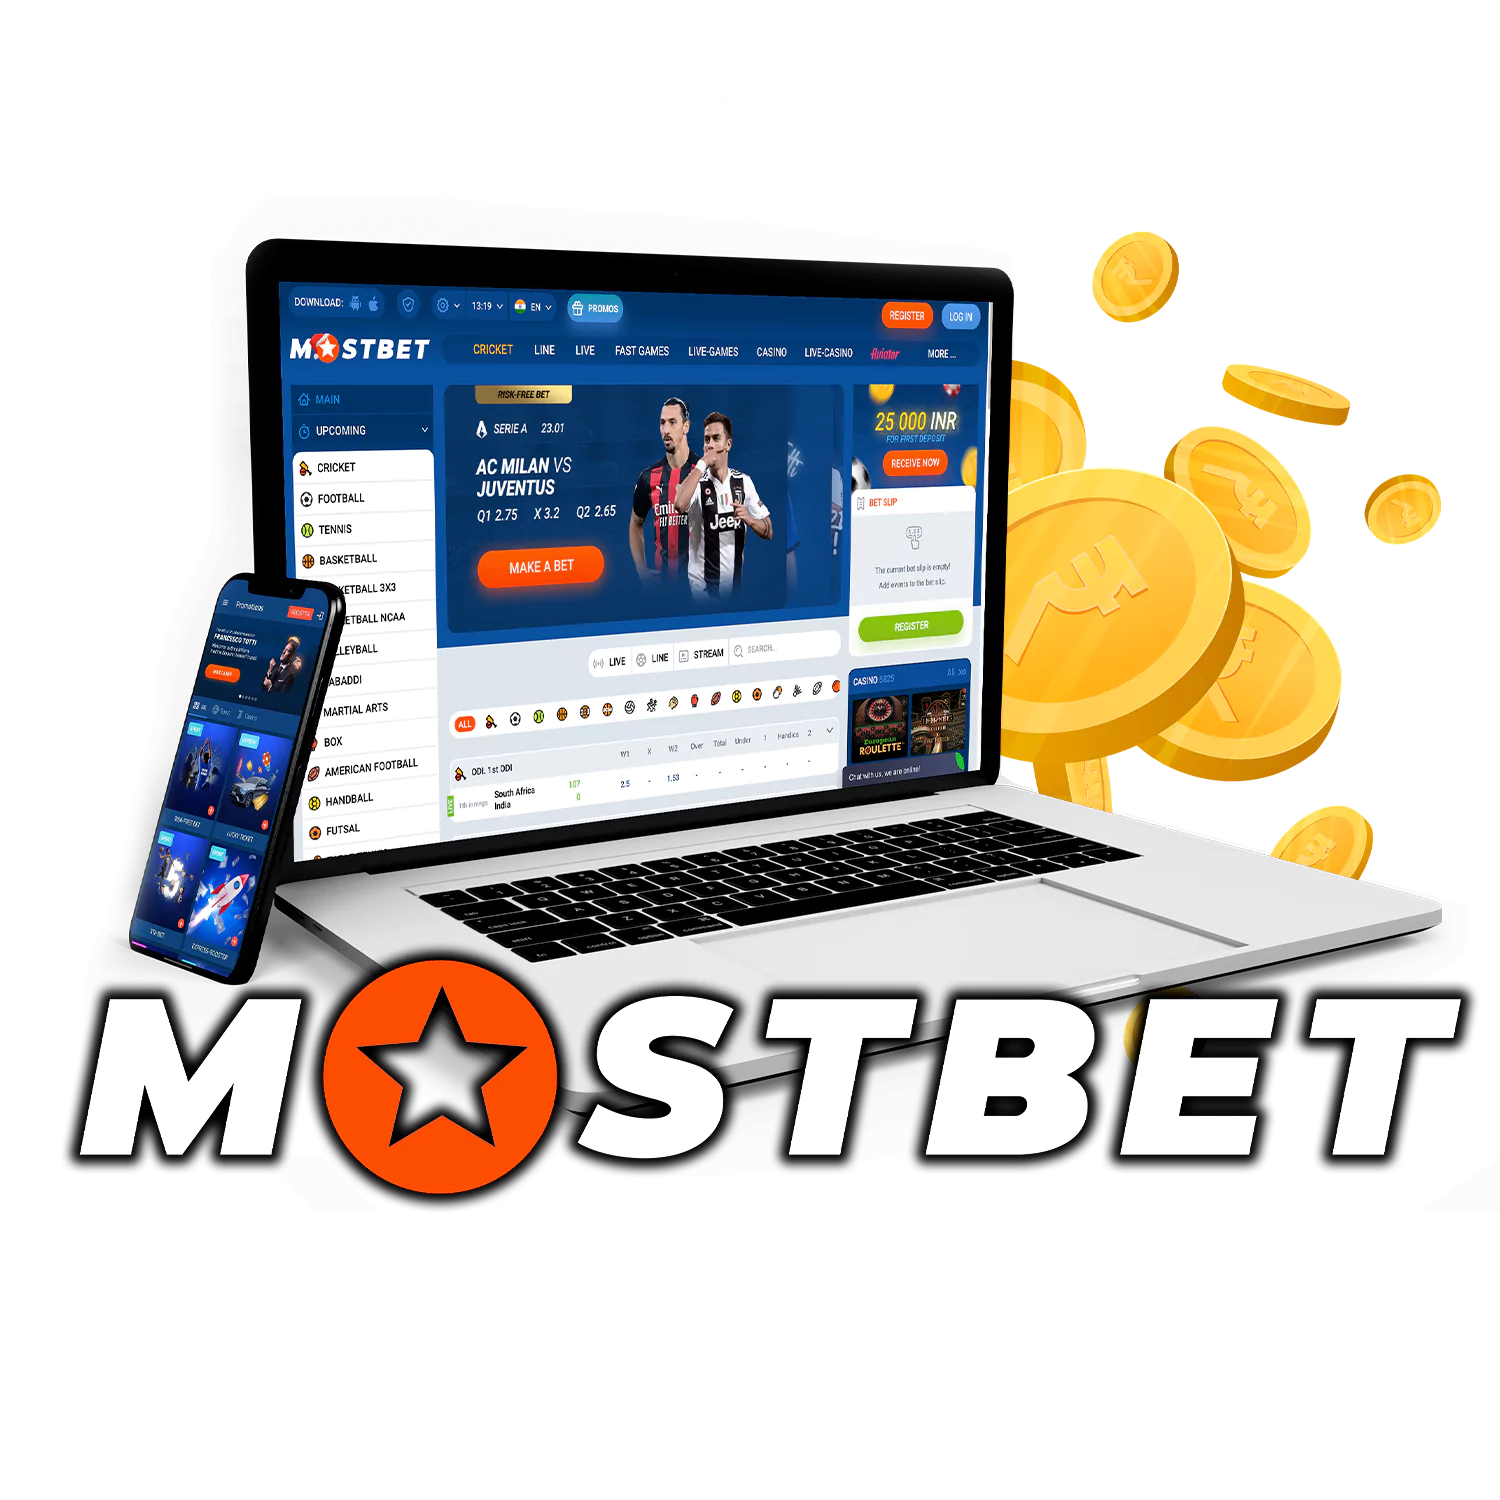 How To Find The Time To Mostbet - букмекерская контора, которая предлагает различные варианты ставок, такие как ставки на спорт, игры в казино и Esport On Twitter in 2021